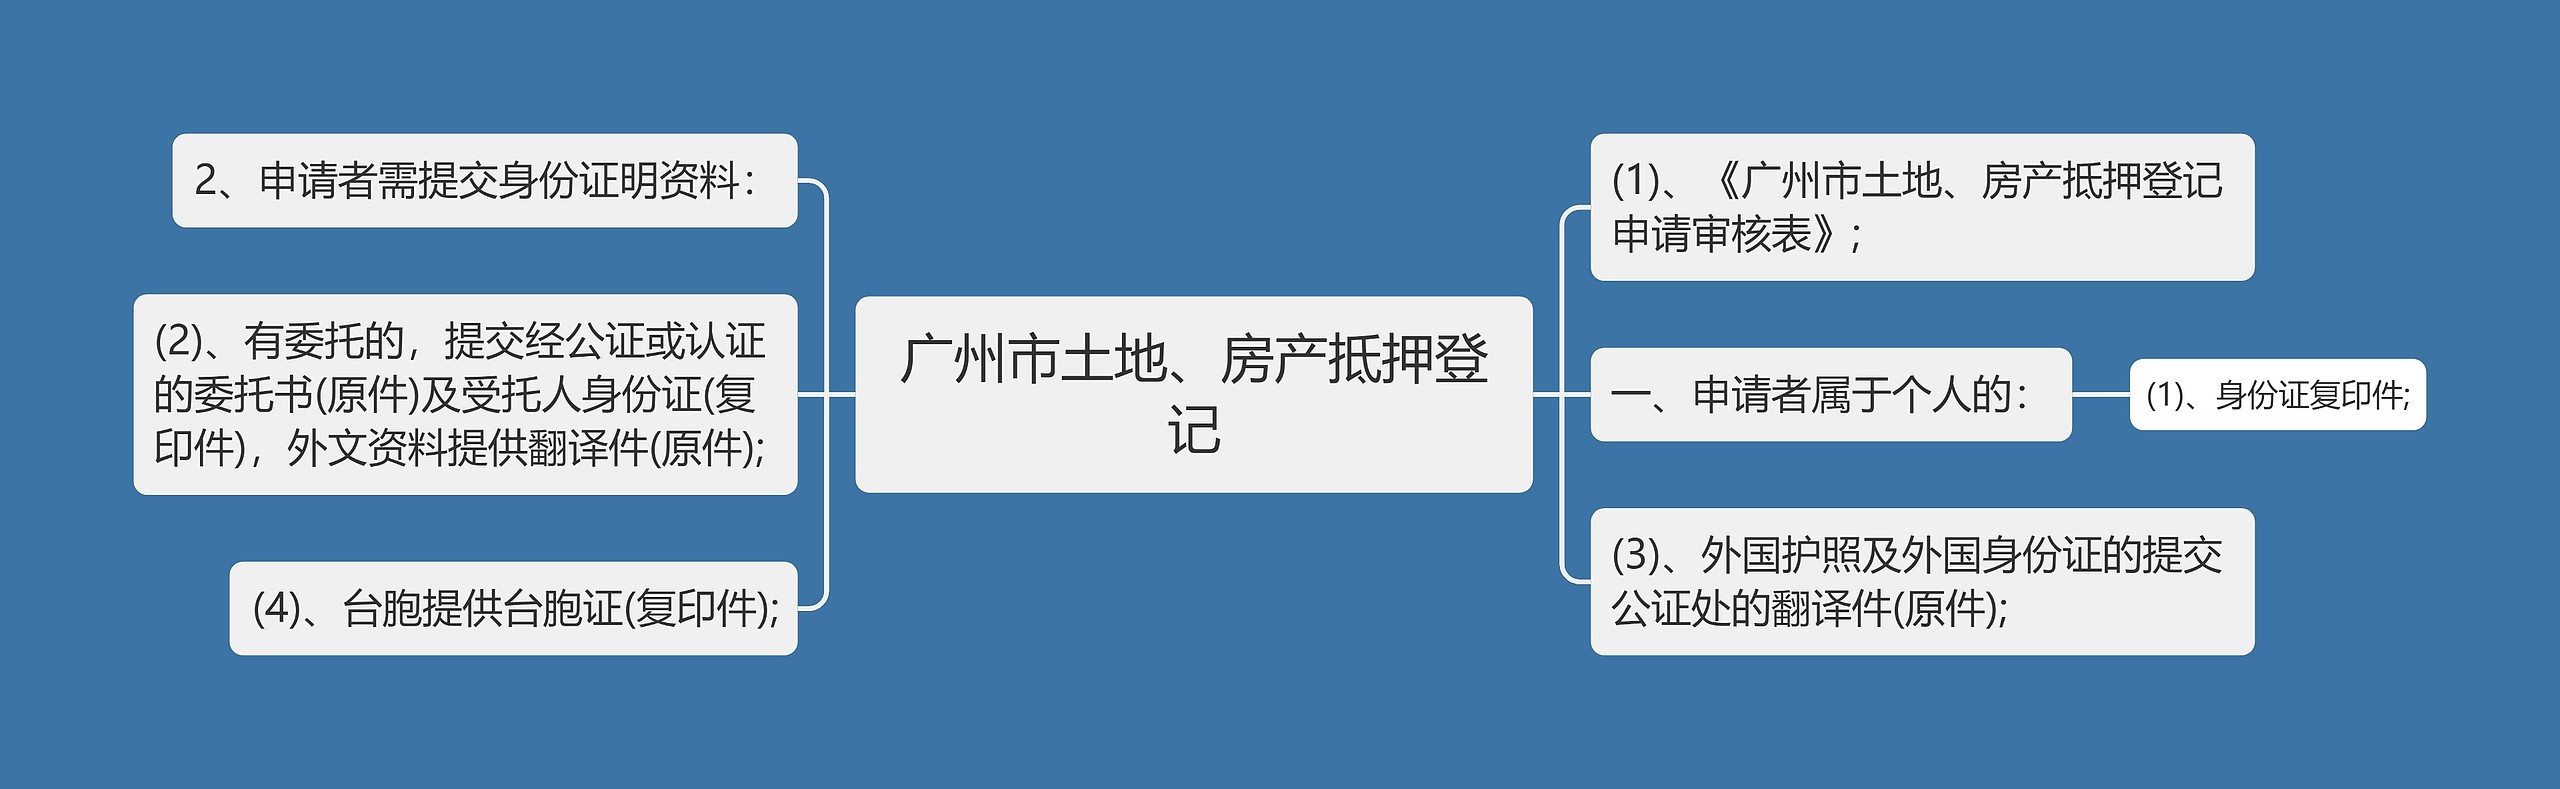 广州市土地、房产抵押登记